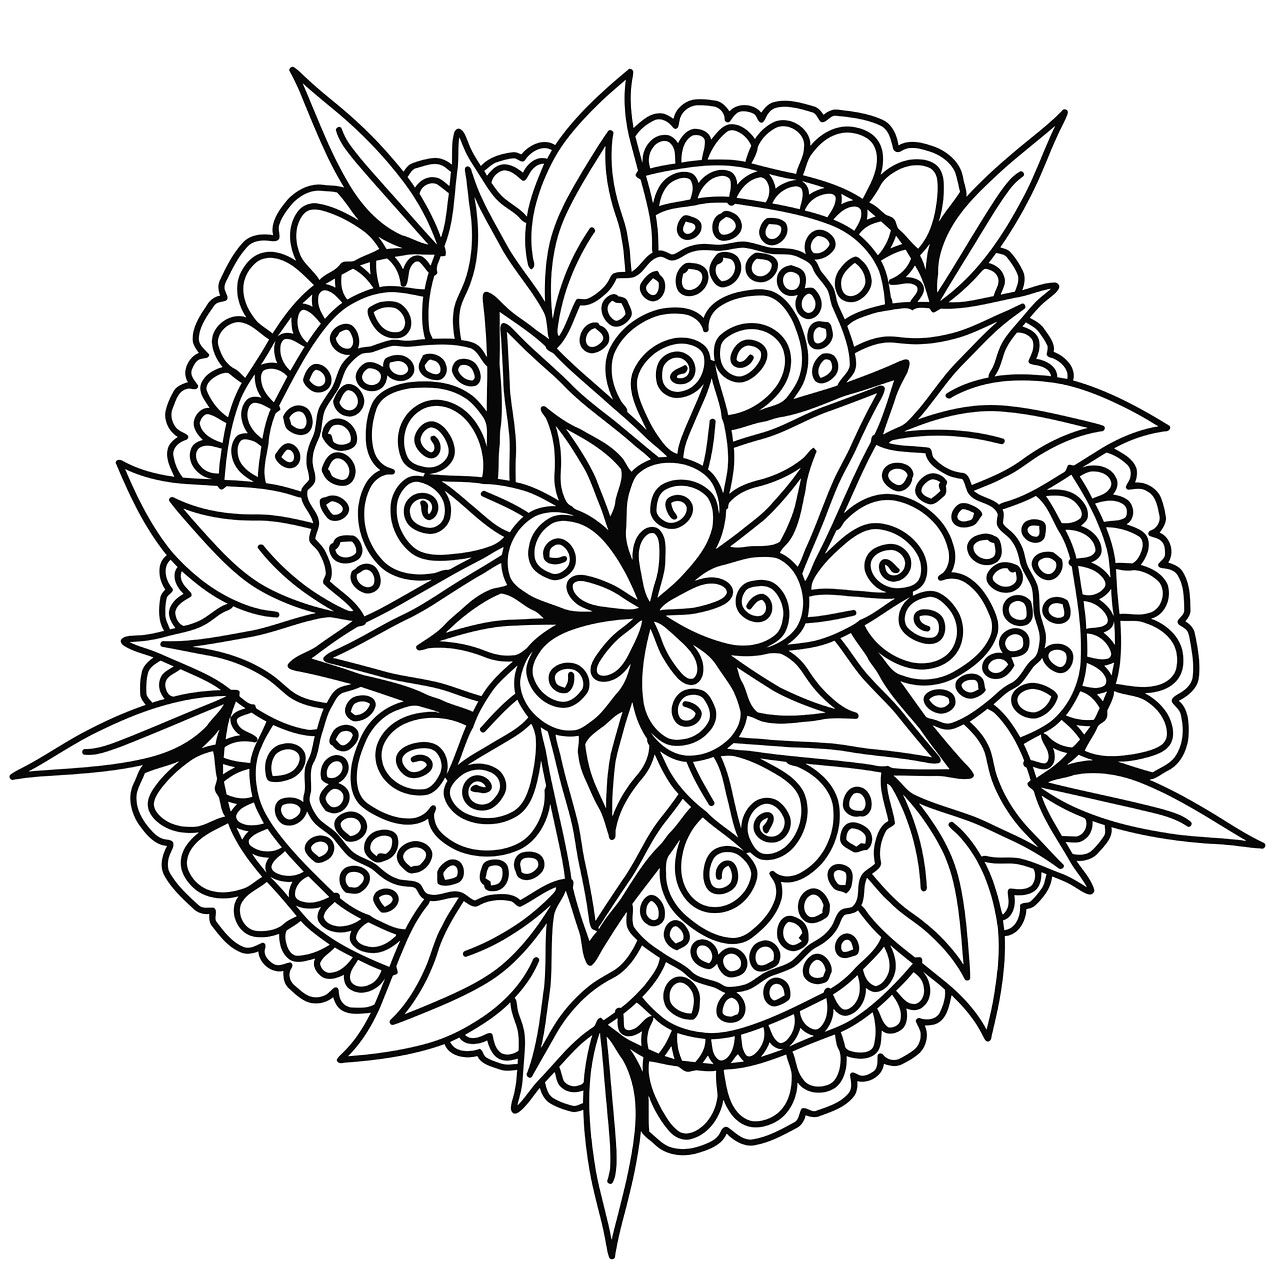 Des lignes épurées pour un Mandala végétal dessiné à la main, avec de belles feuilles, fleurs et éléments abstraits.